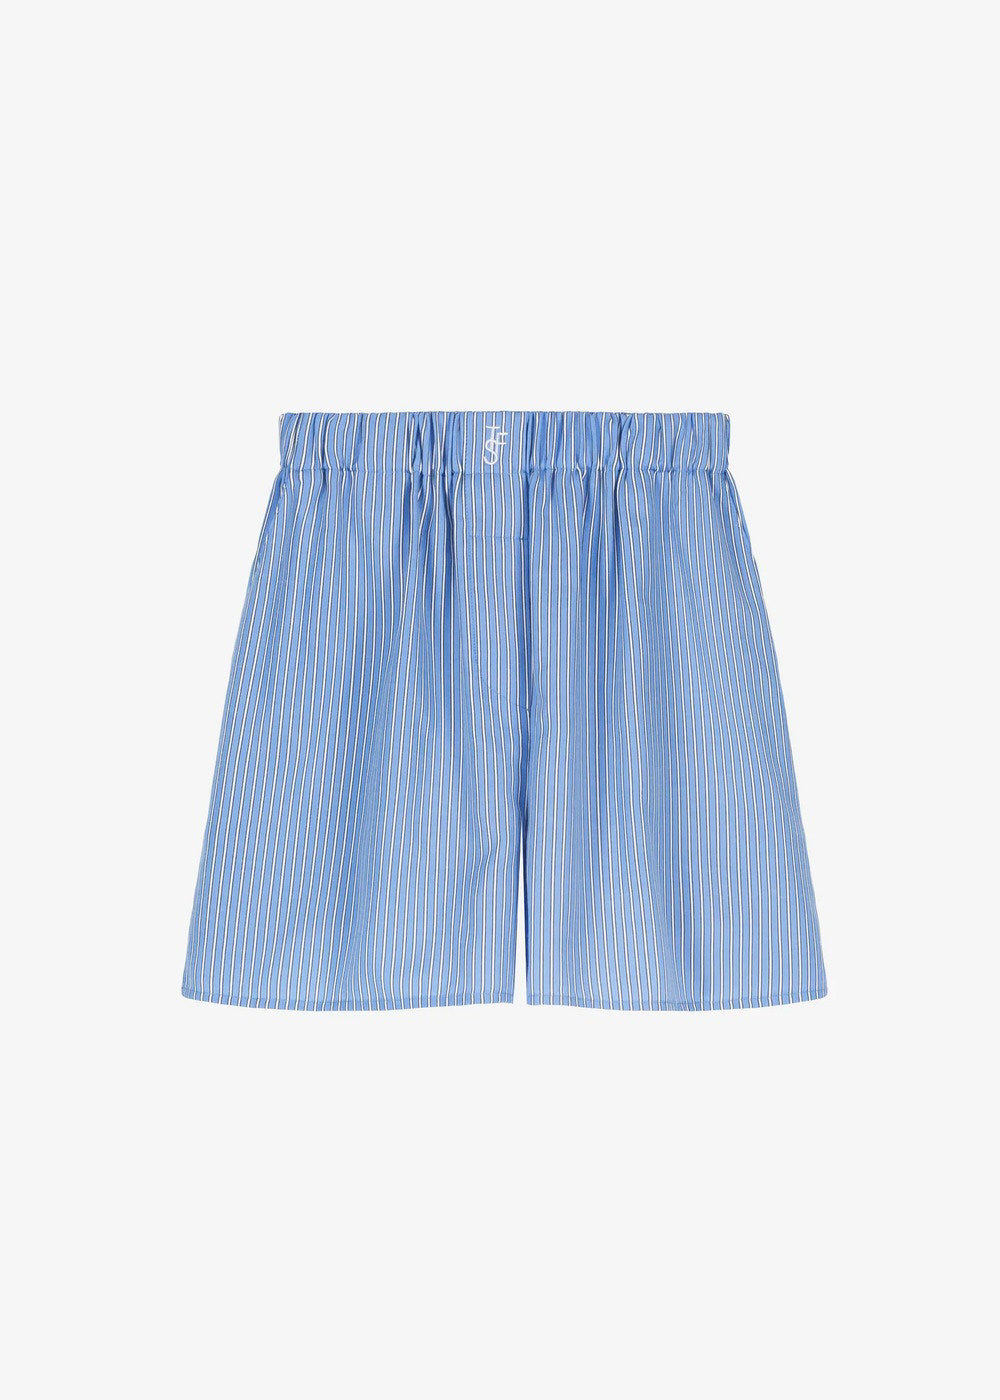 Camisa y shorts estampados, el primaveral conjunto de Amelia Bono que  puedes comprar en Zara y que estiliza a más no poder